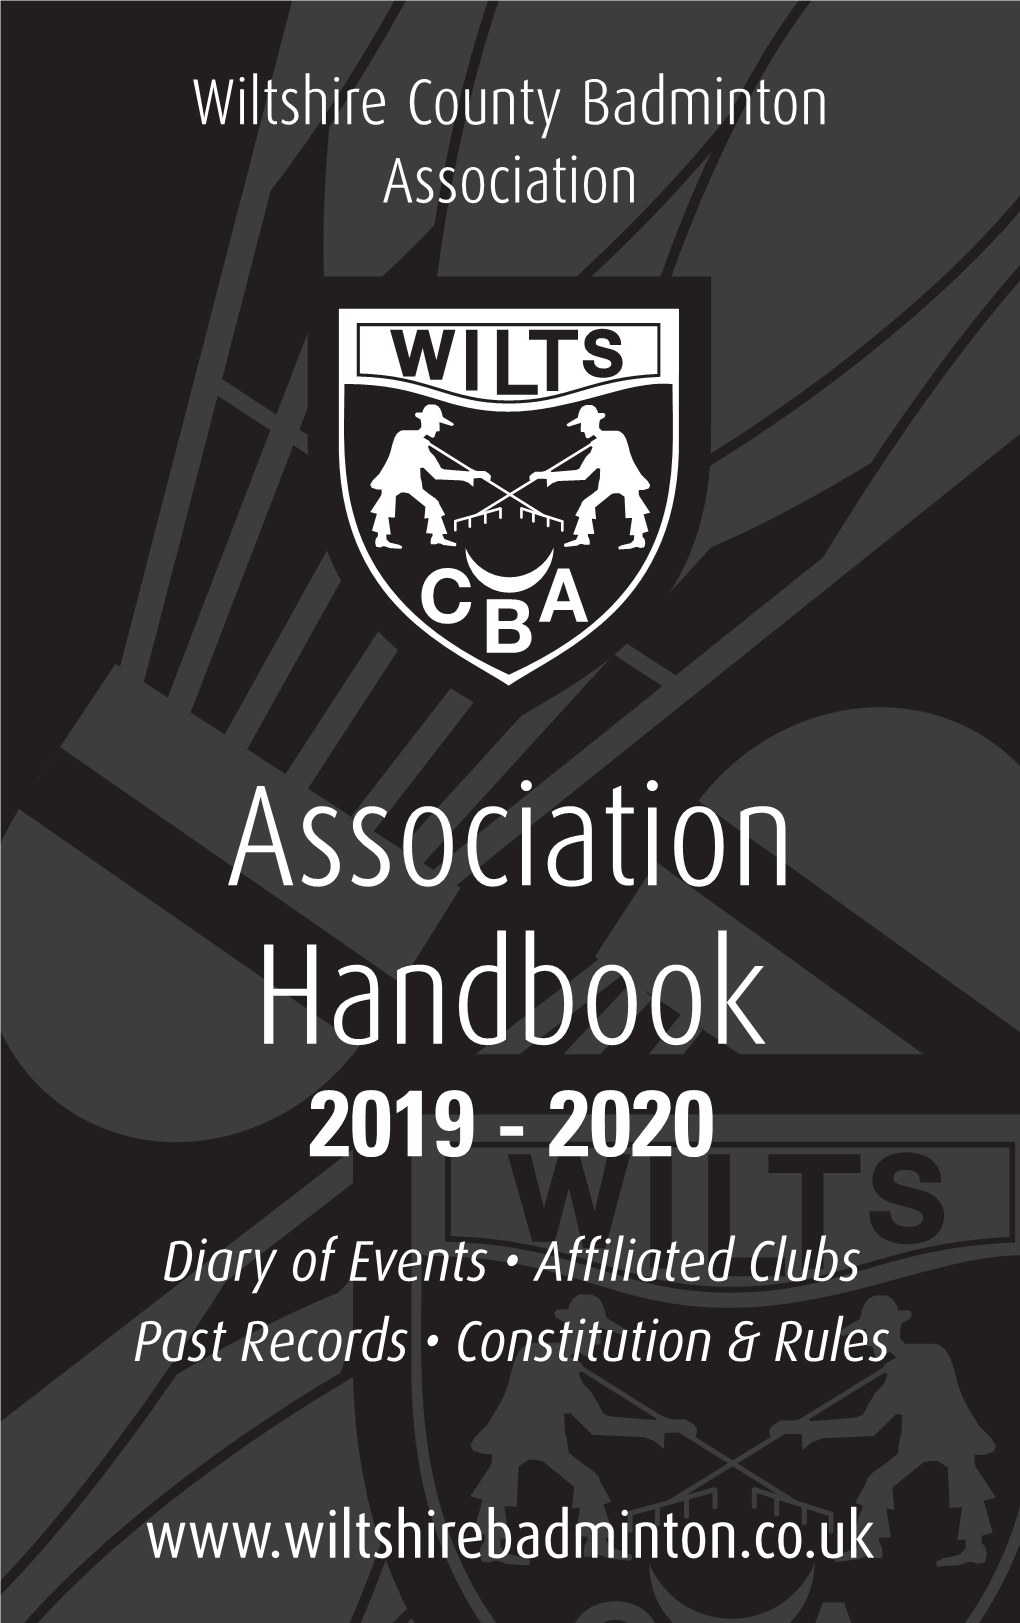 Wilts CBA Handbook 19-20.Qxp Layout 1 23/11/2019 22:13 Page 1